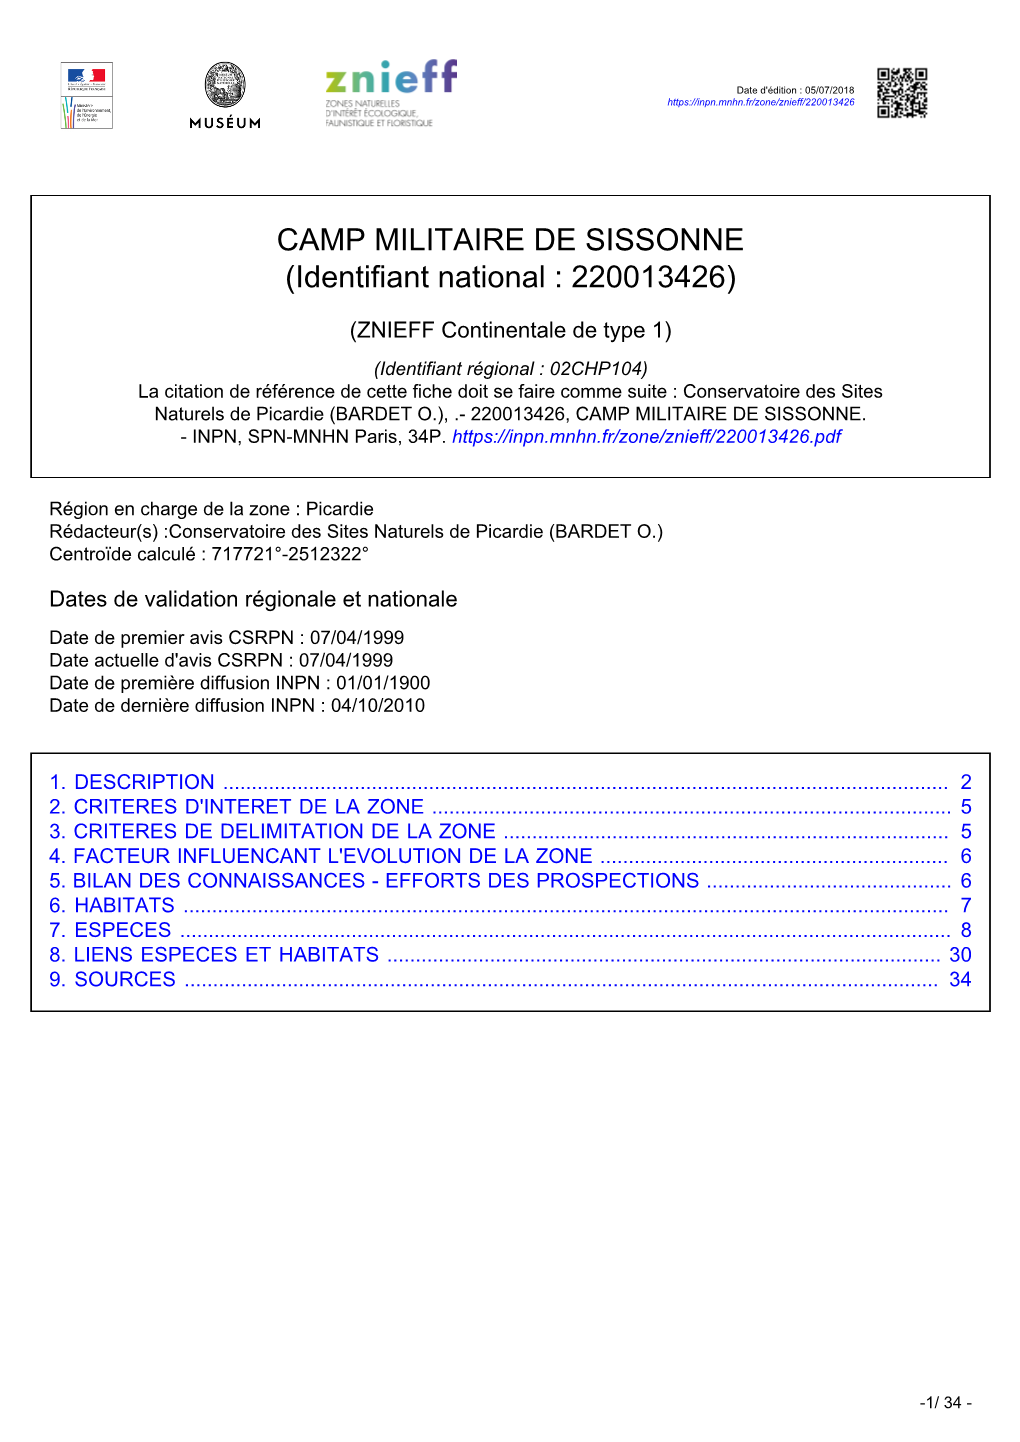 CAMP MILITAIRE DE SISSONNE (Identifiant National : 220013426)